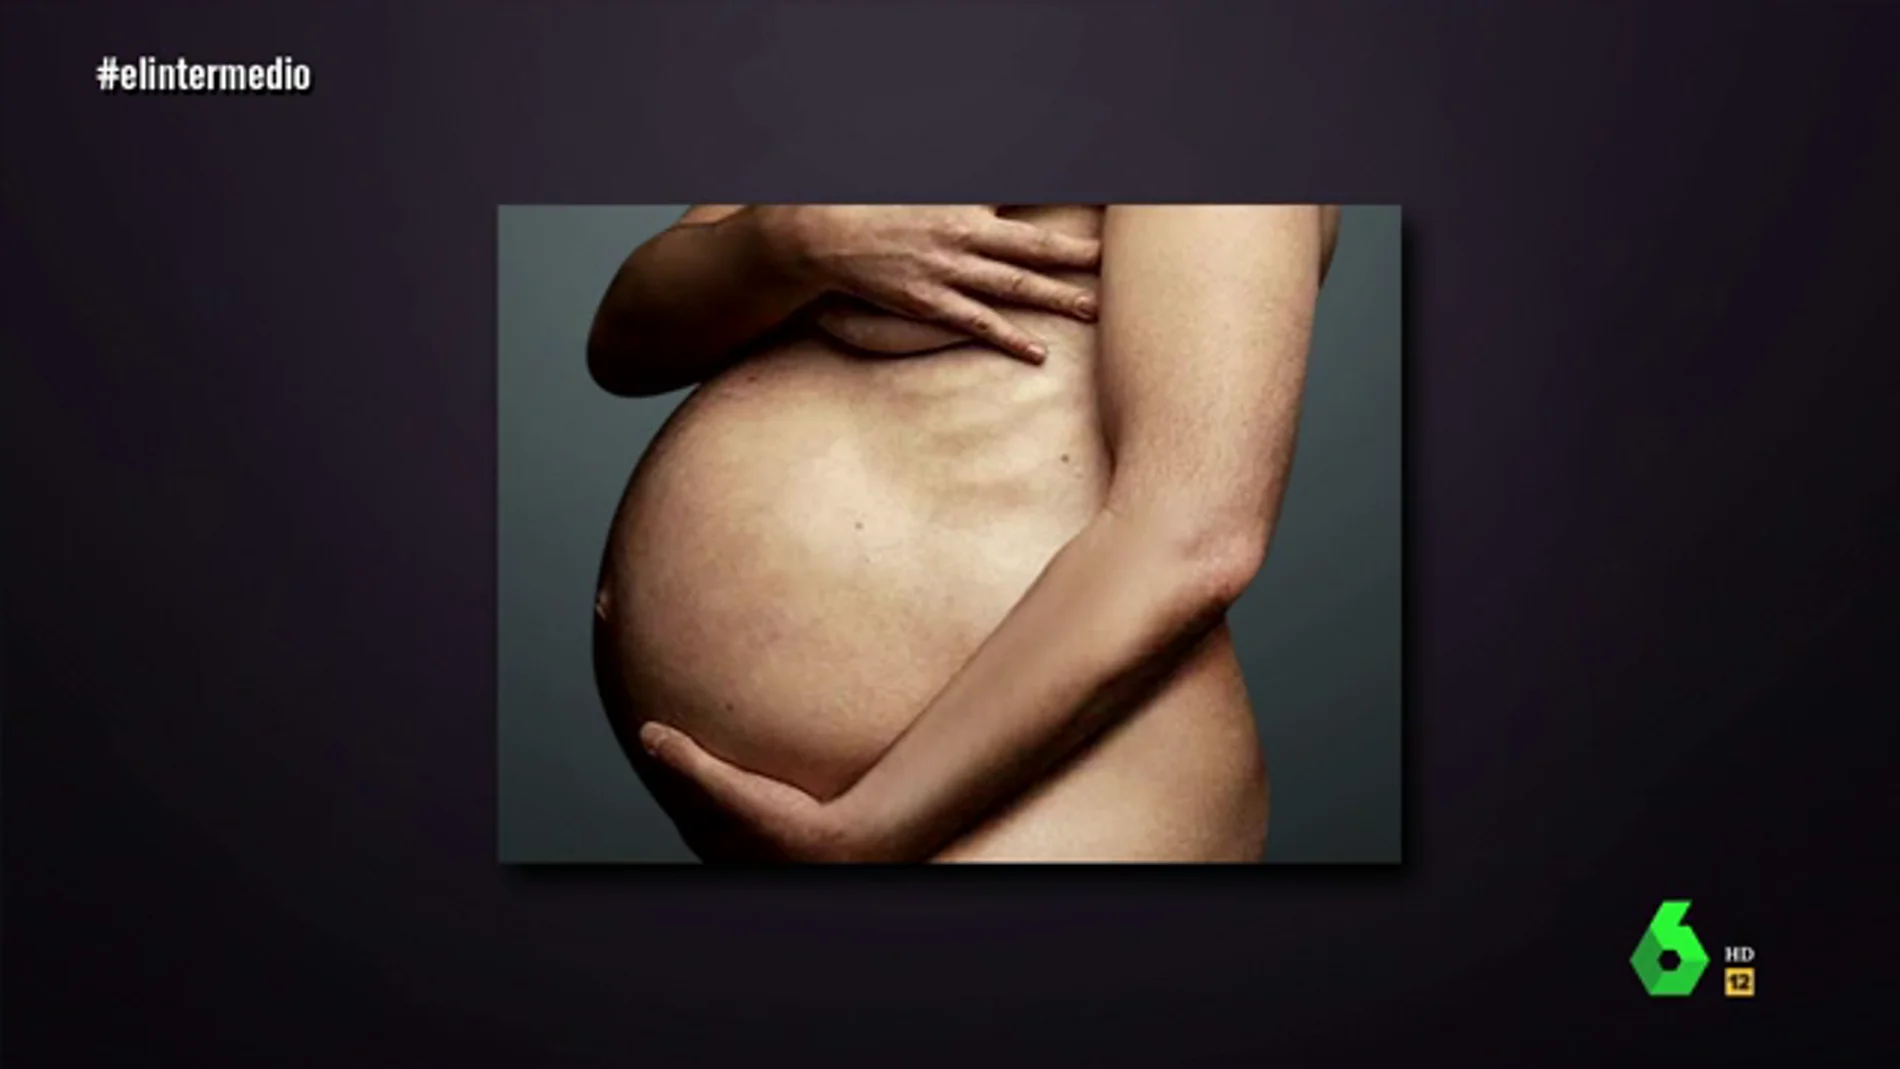 El "embarazo" de El Intermedio que "está en boca de todos los españoles": "Estoy de 13 semanas y son mellizos"